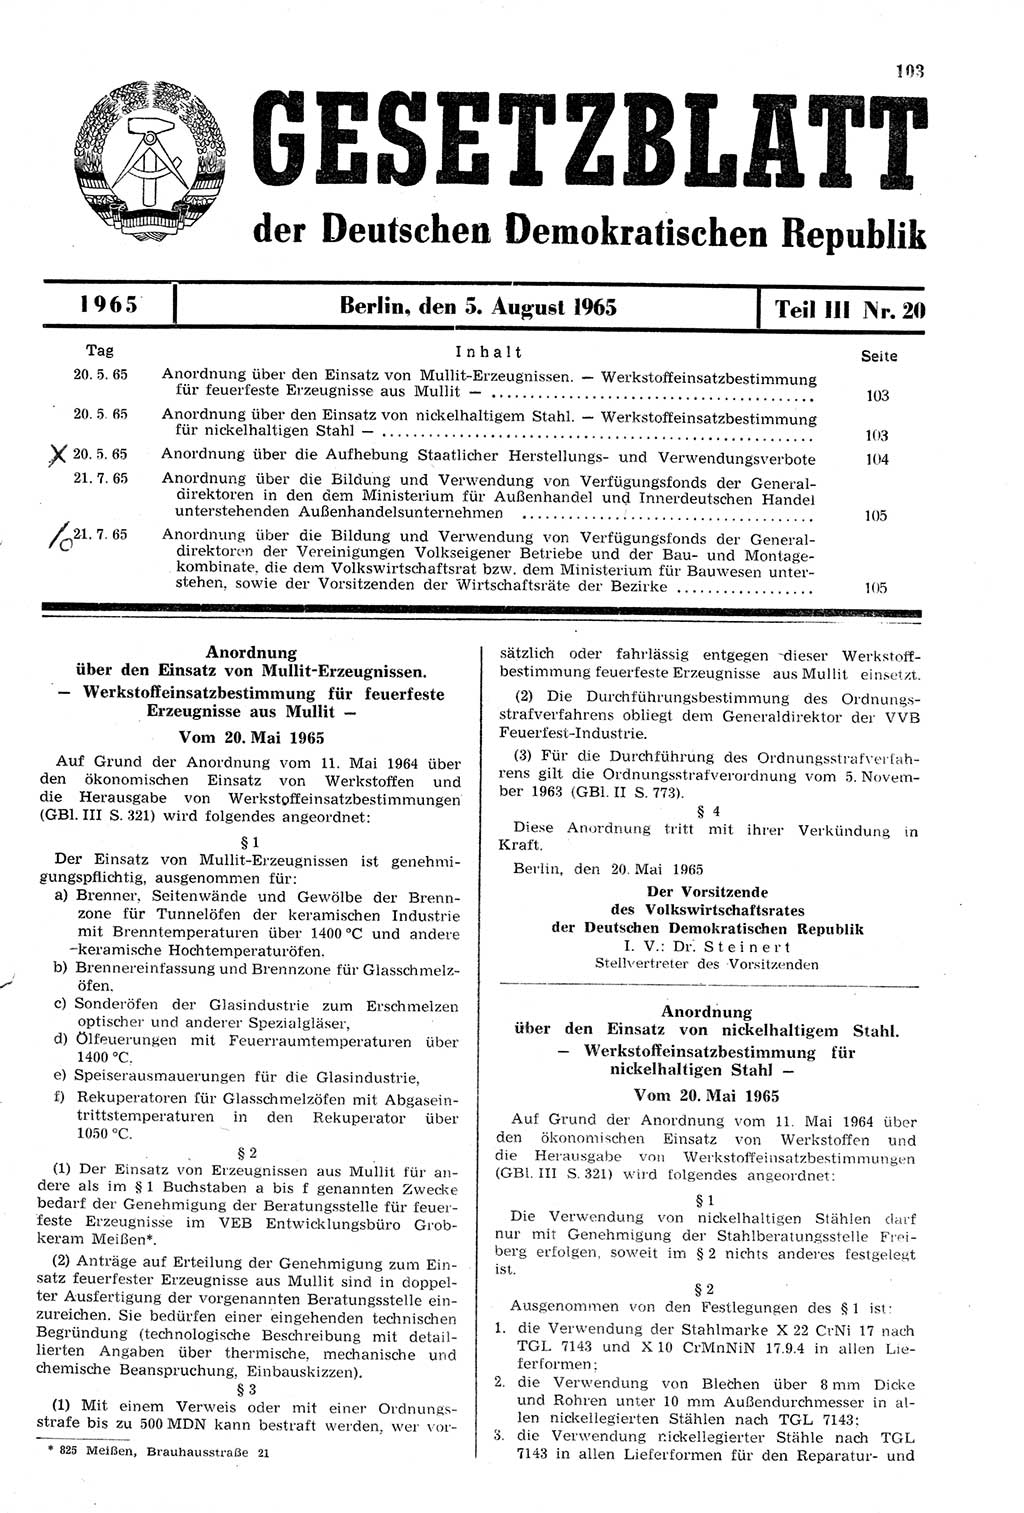 Gesetzblatt (GBl.) der Deutschen Demokratischen Republik (DDR) Teil ⅠⅠⅠ 1965, Seite 103 (GBl. DDR ⅠⅠⅠ 1965, S. 103)